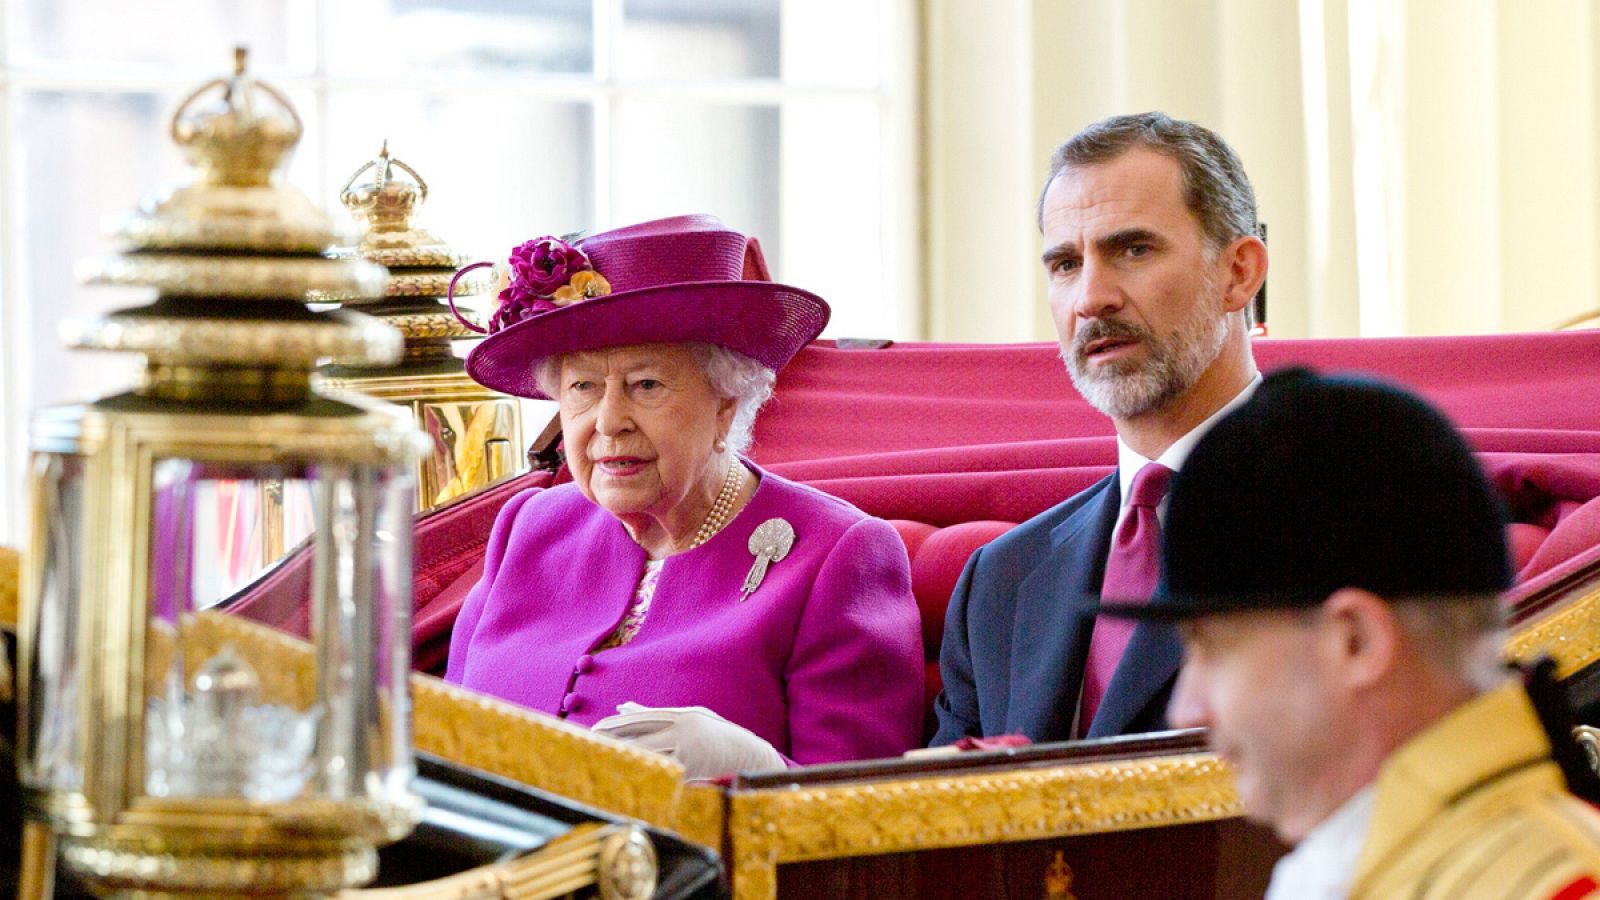 La reina Isabel II junto al rey Felipe VI llegan en coche de caballos al Grand Hall del Palacio de Buckingham, en Londres (12/07/2017)